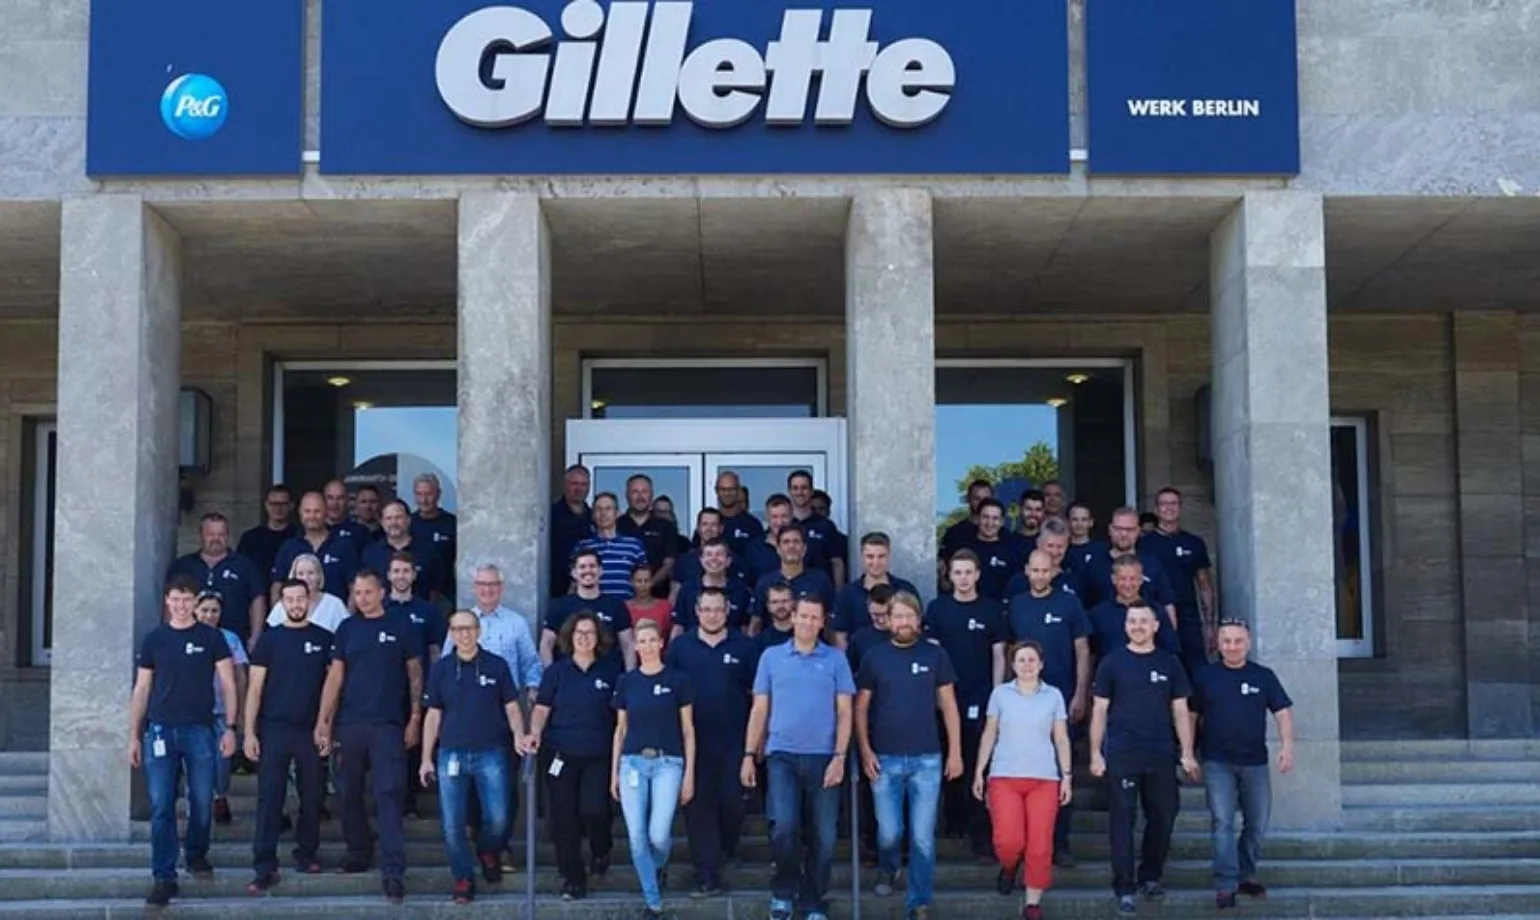 Mitarbeiter des Gillette Werks Berlin